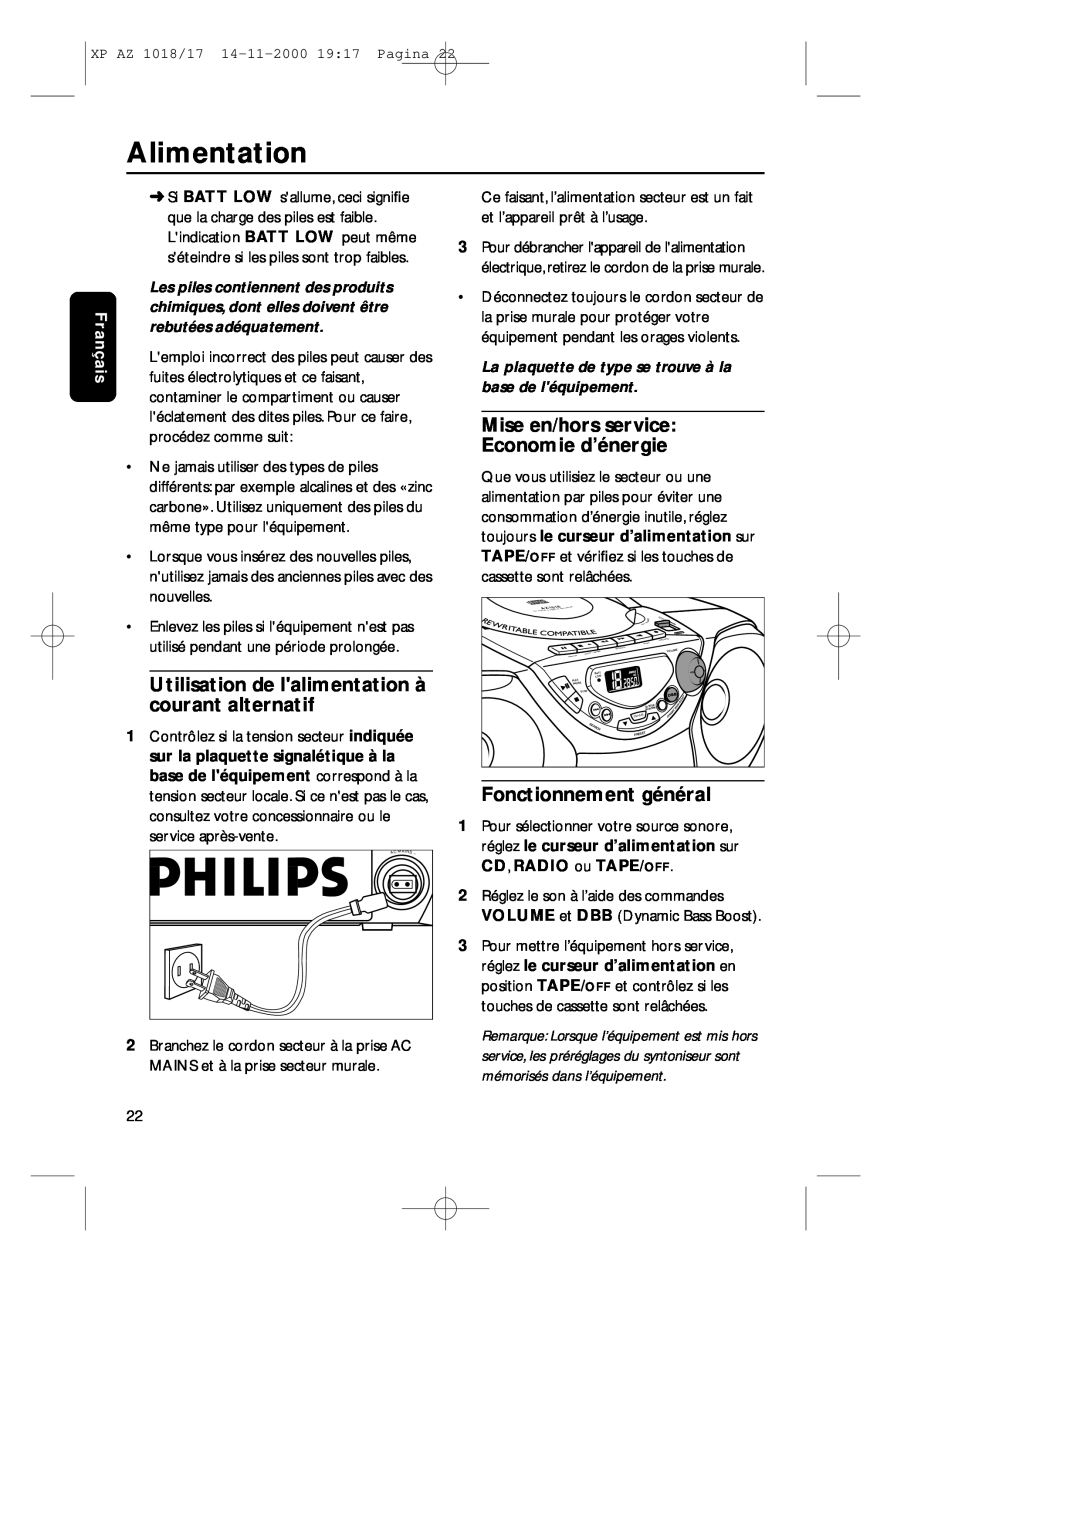 Philips 1018 Alimentation, Mise en/hors service Economie d’énergie, Utilisation de lalimentation à courant alternatif 